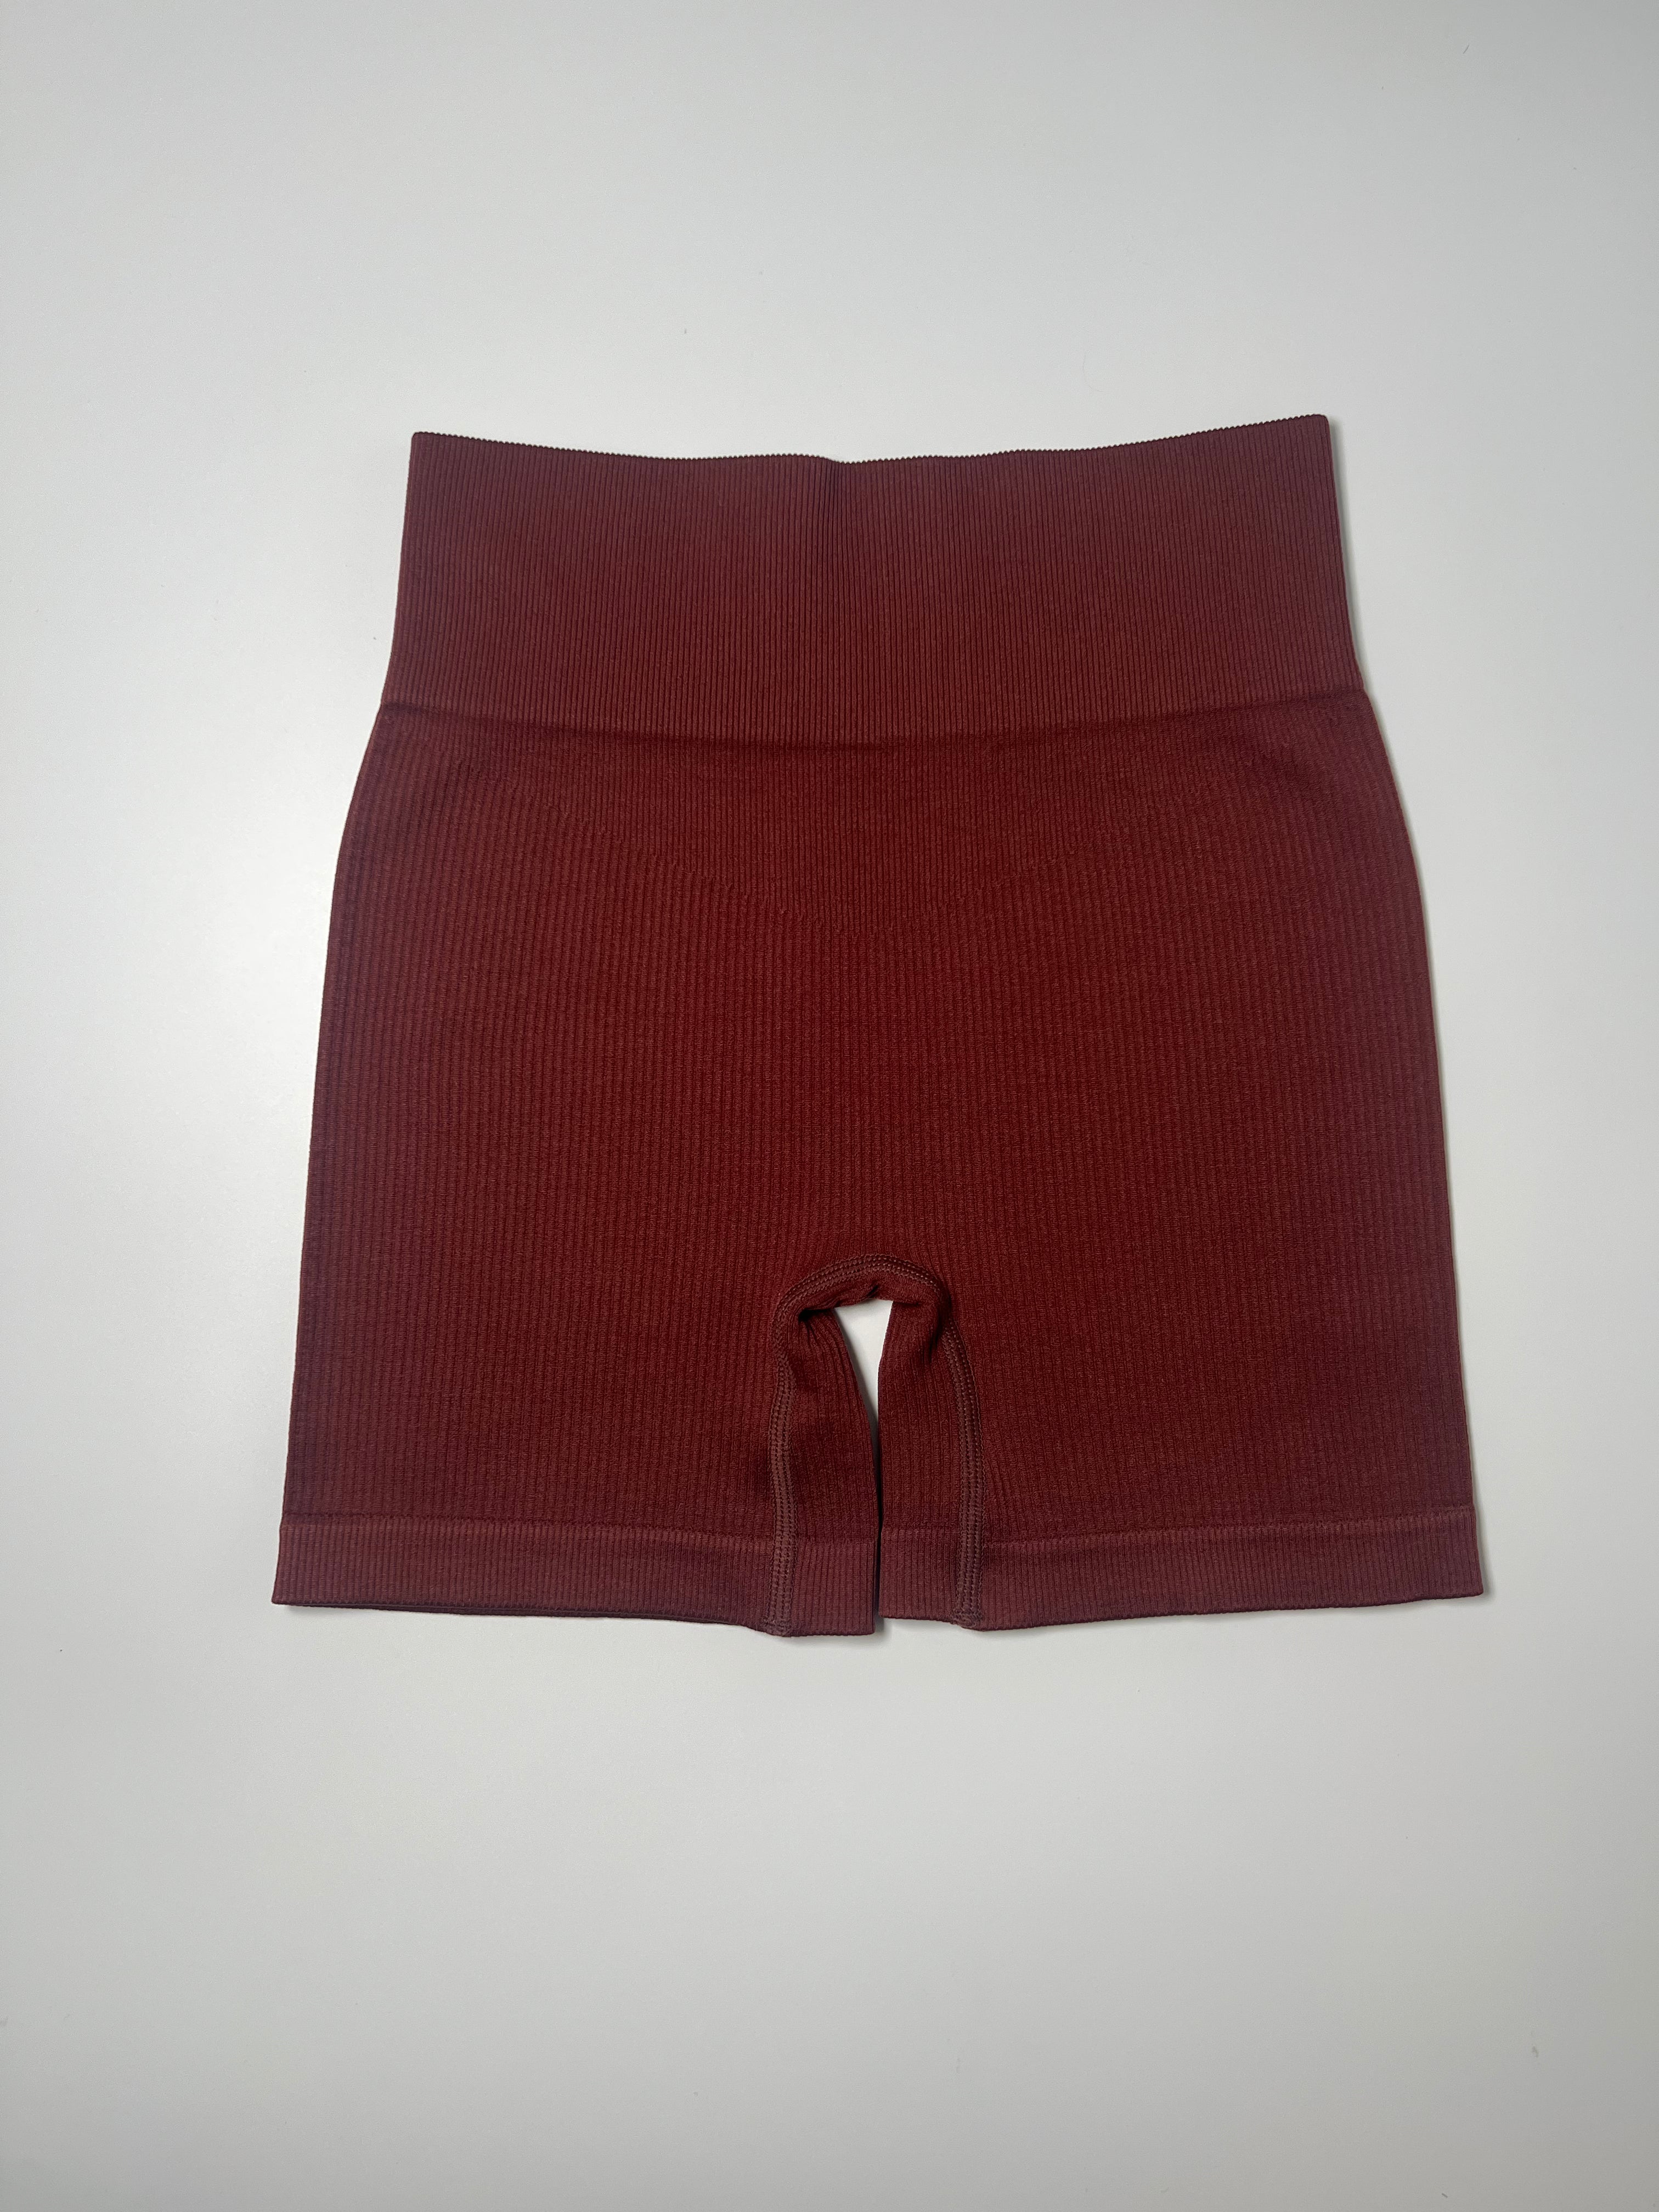 Seamless Ribbed Shorts - Brown